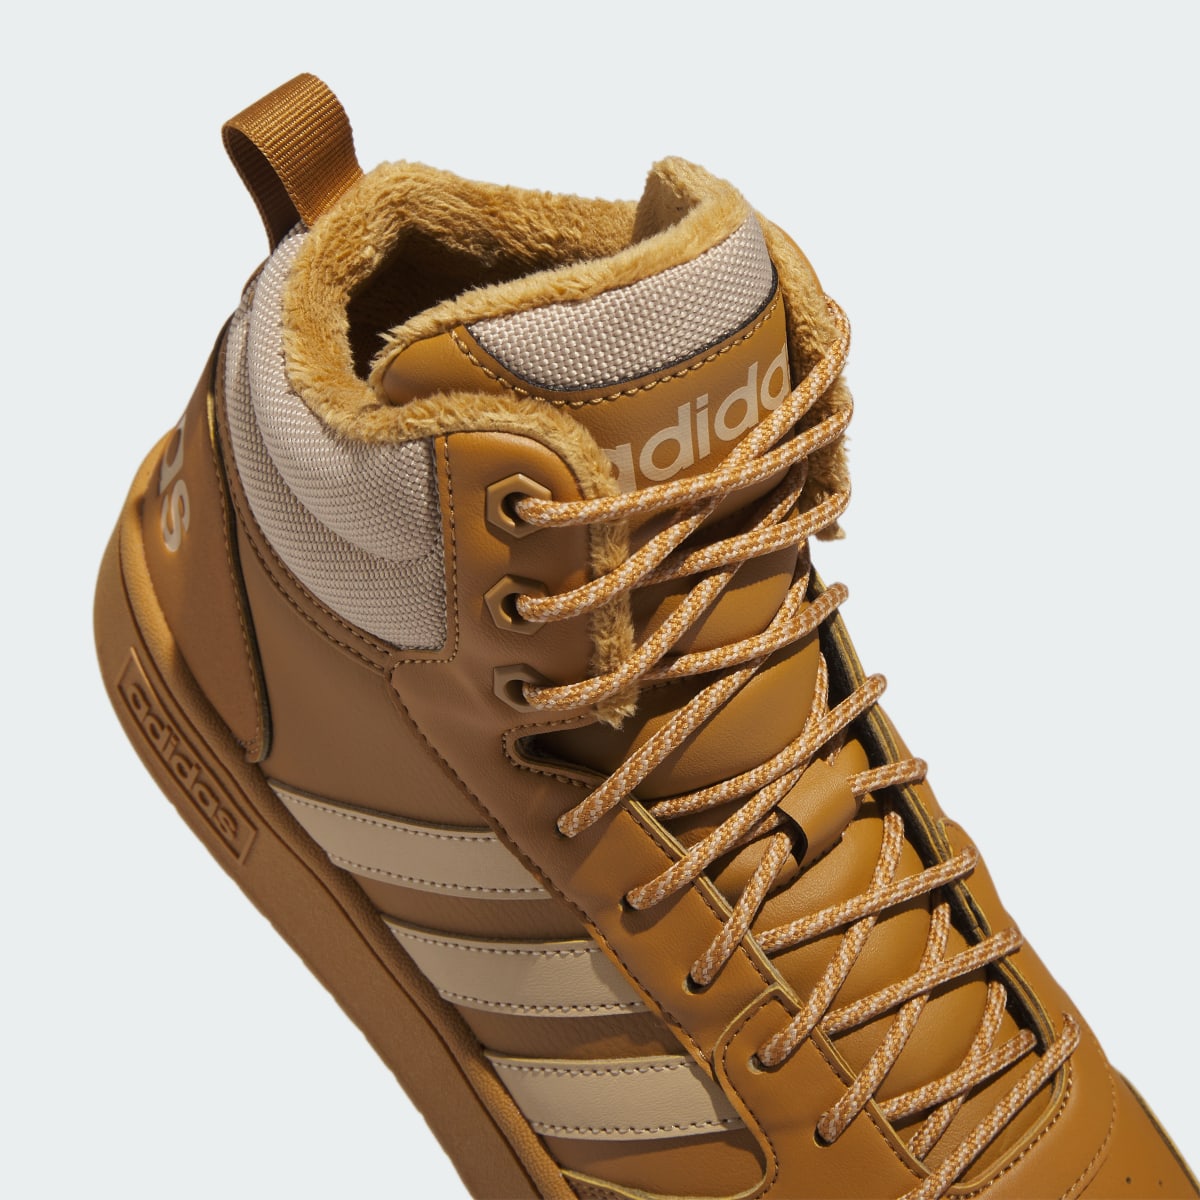 Adidas Sapatilhas de Inverno com Forro em Pelagem para Lifestyle e Basquetebol Hoops 3.0. 9